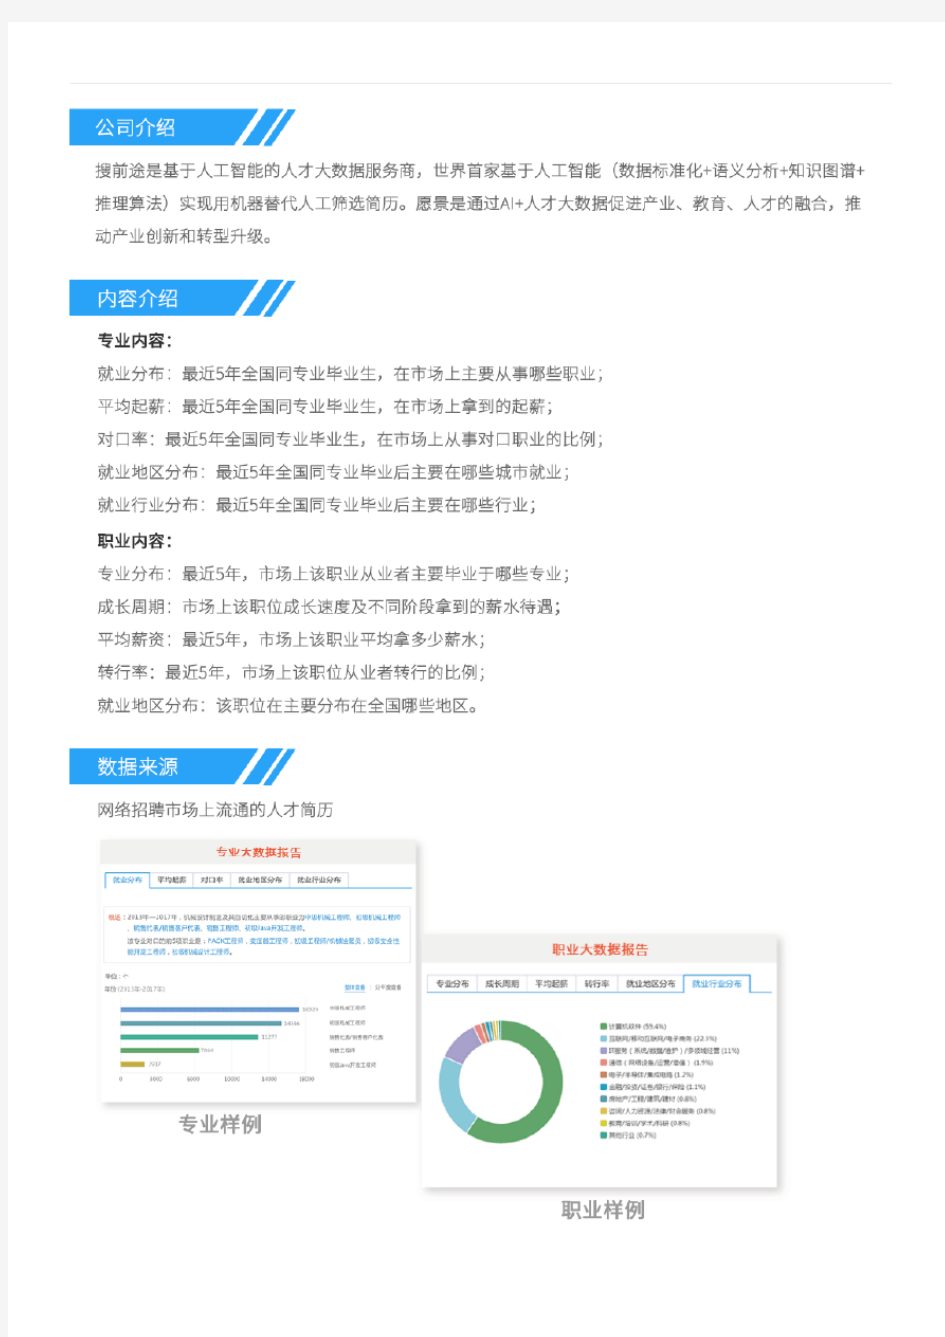 2013-2017年北京大学城乡规划专业毕业生就业大数据报告